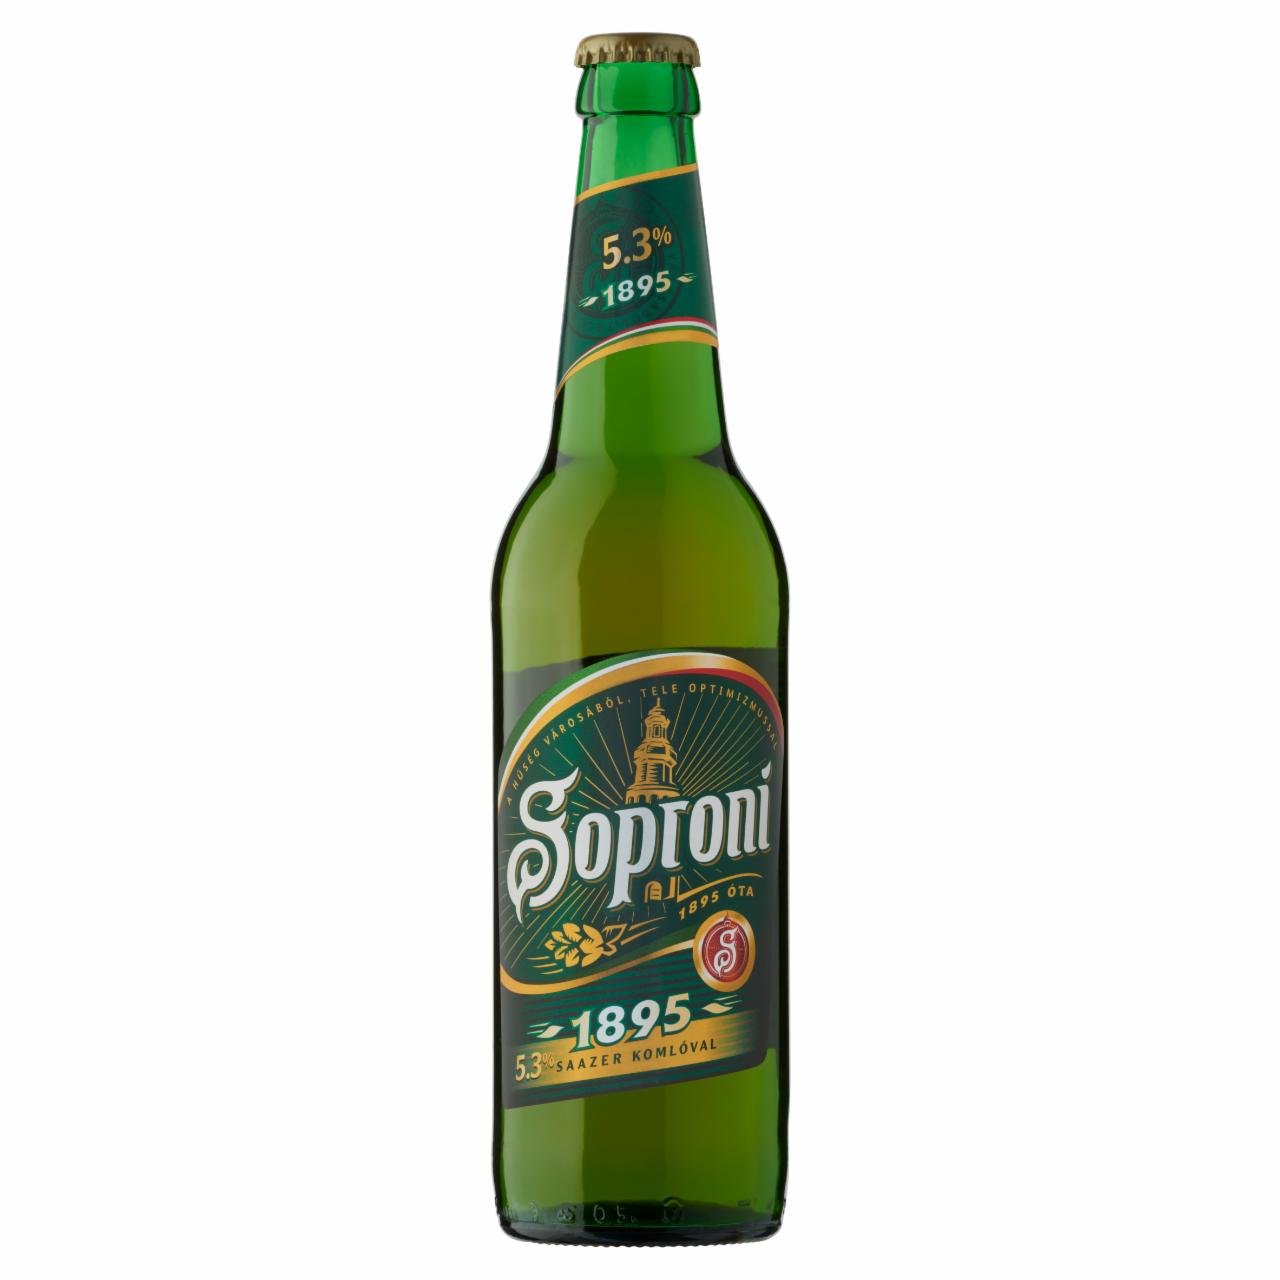 Képek - Soproni 1895 minőségi világos sör 5,3% 0,5 l üveg